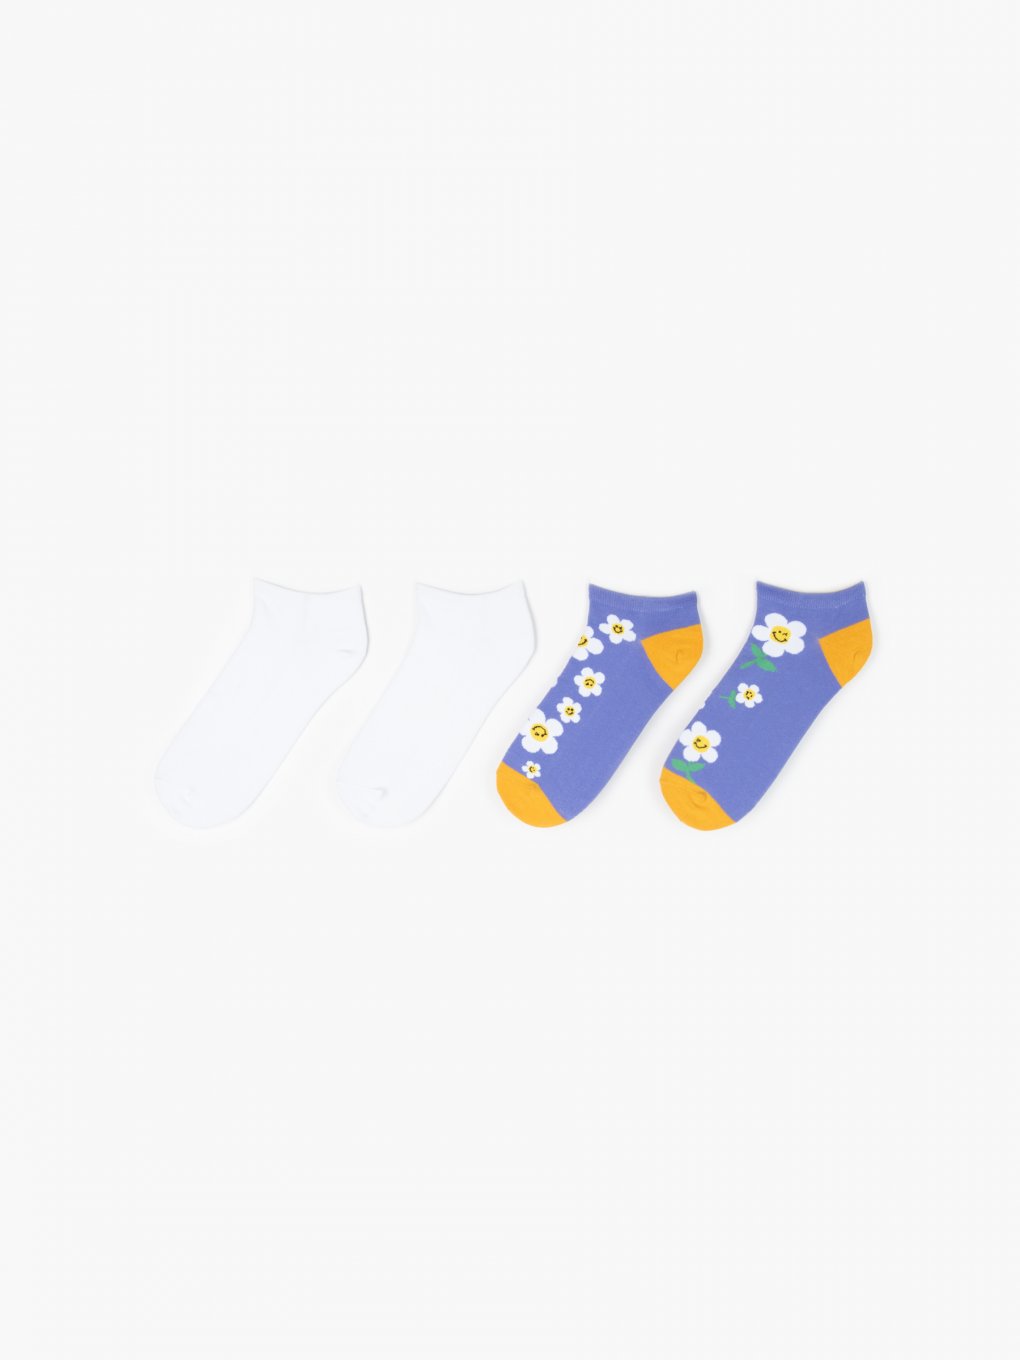 Dva páry ponožek